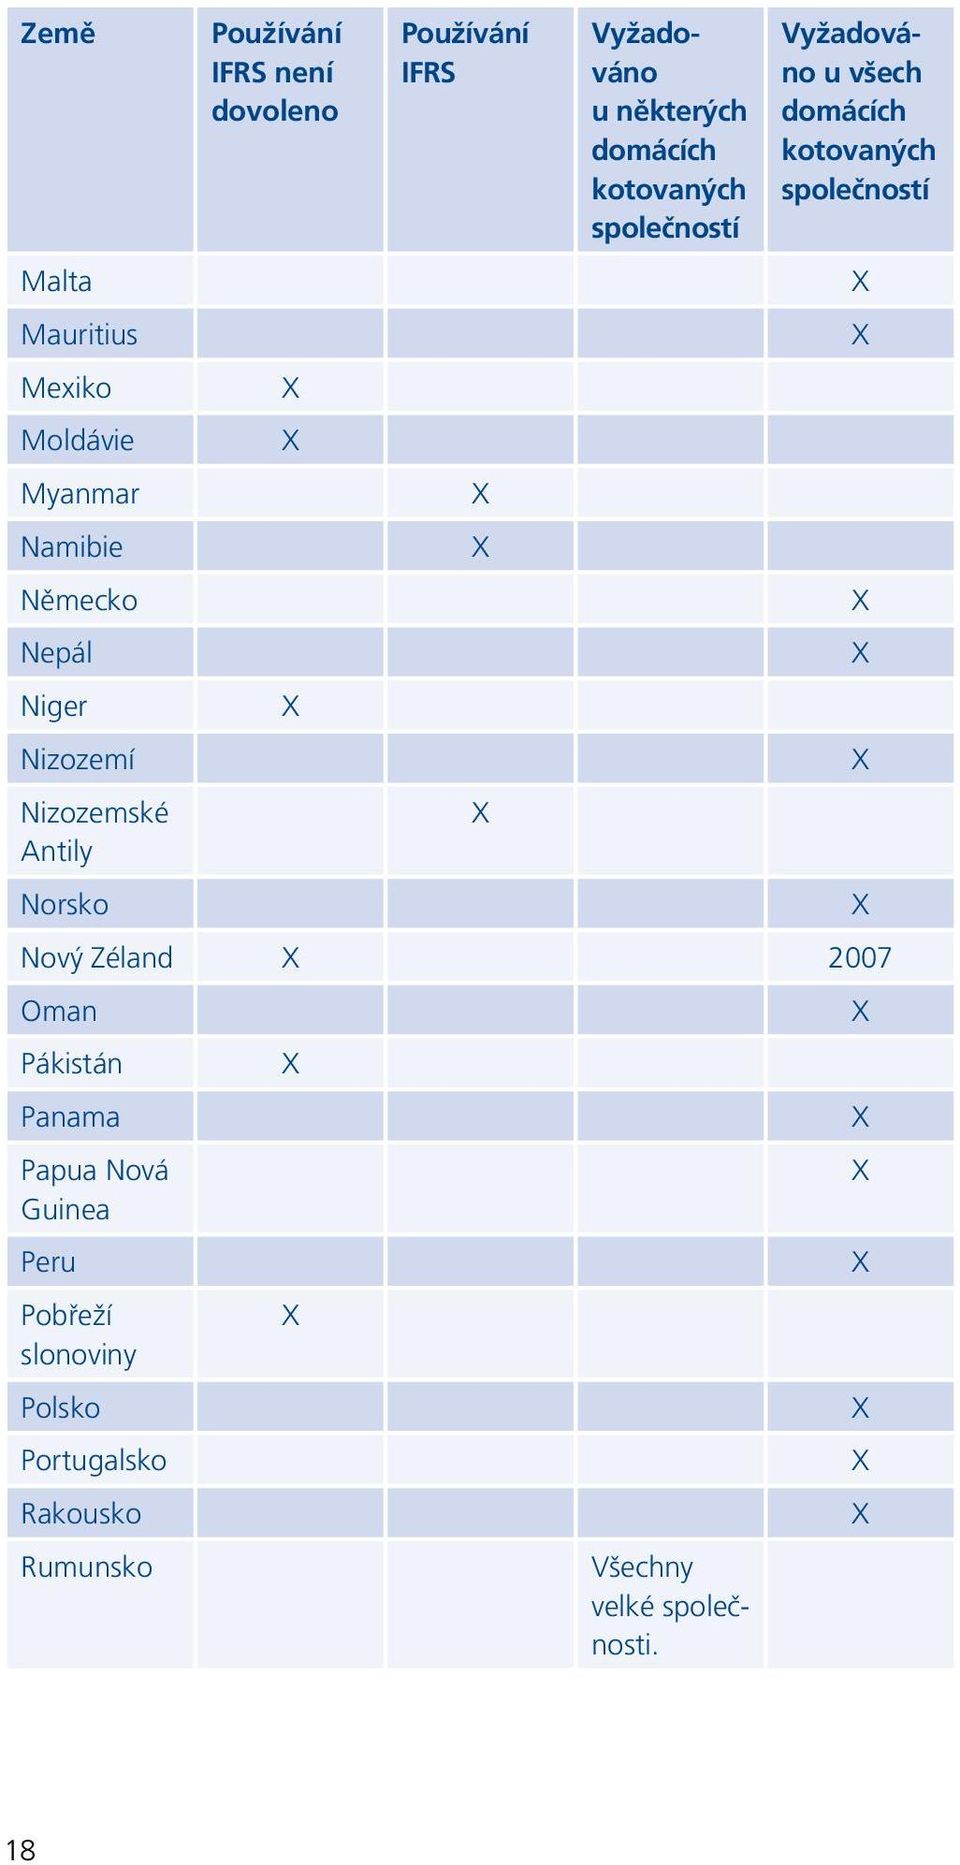 Německo X Nepál X Niger X Nizozemí X Nizozemské X Antily Norsko X Nový Zéland X 2007 Oman X Pákistán X Panama X